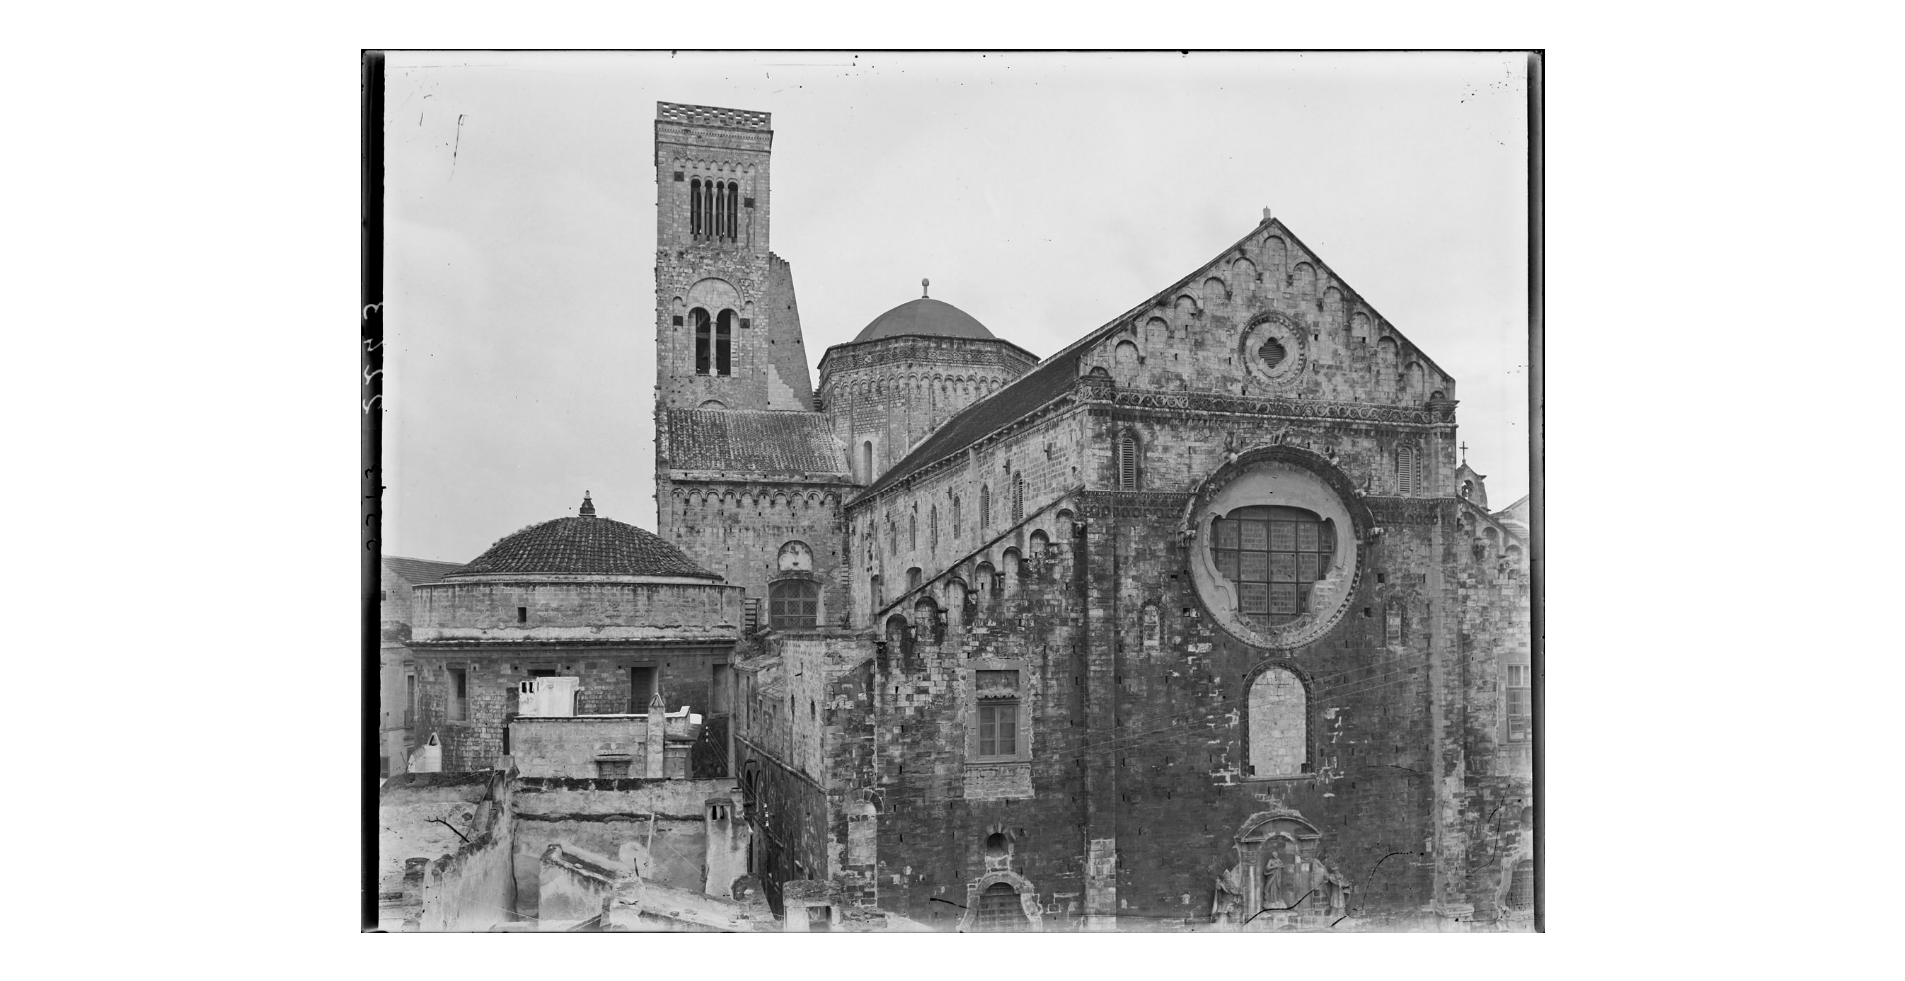 Fotografo non identificato, Bari -  Cattedrale di San Sabino, veduta d'insieme del campanile e della parte superiore della facciata, 1931 ante, E002243